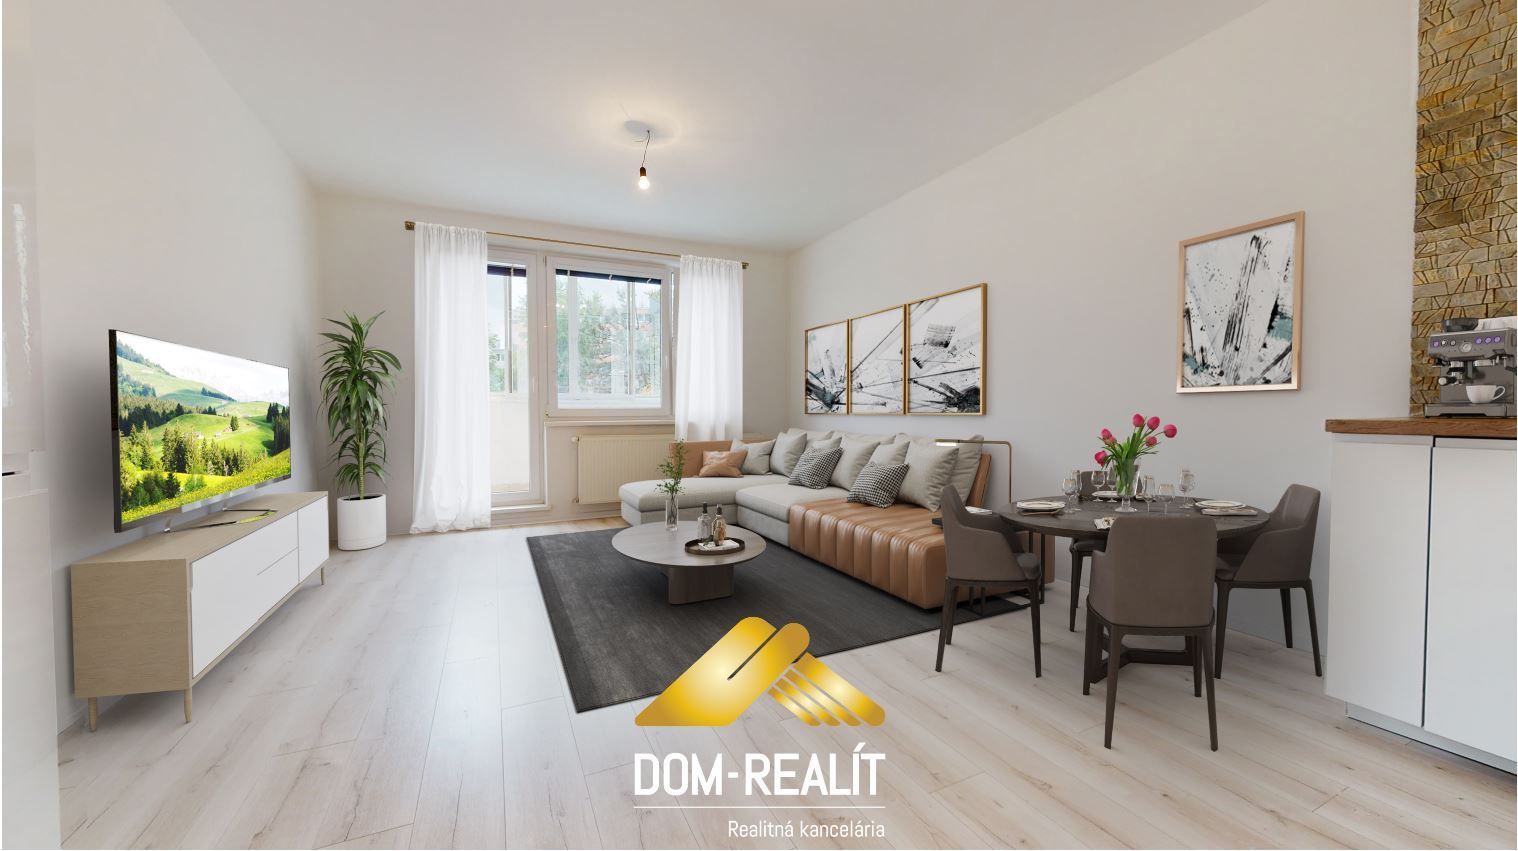 Nehnutelnost DOM-REALÍT ponúka Novozrekonštruovaný byt na absolútnom začiatku Petržalky